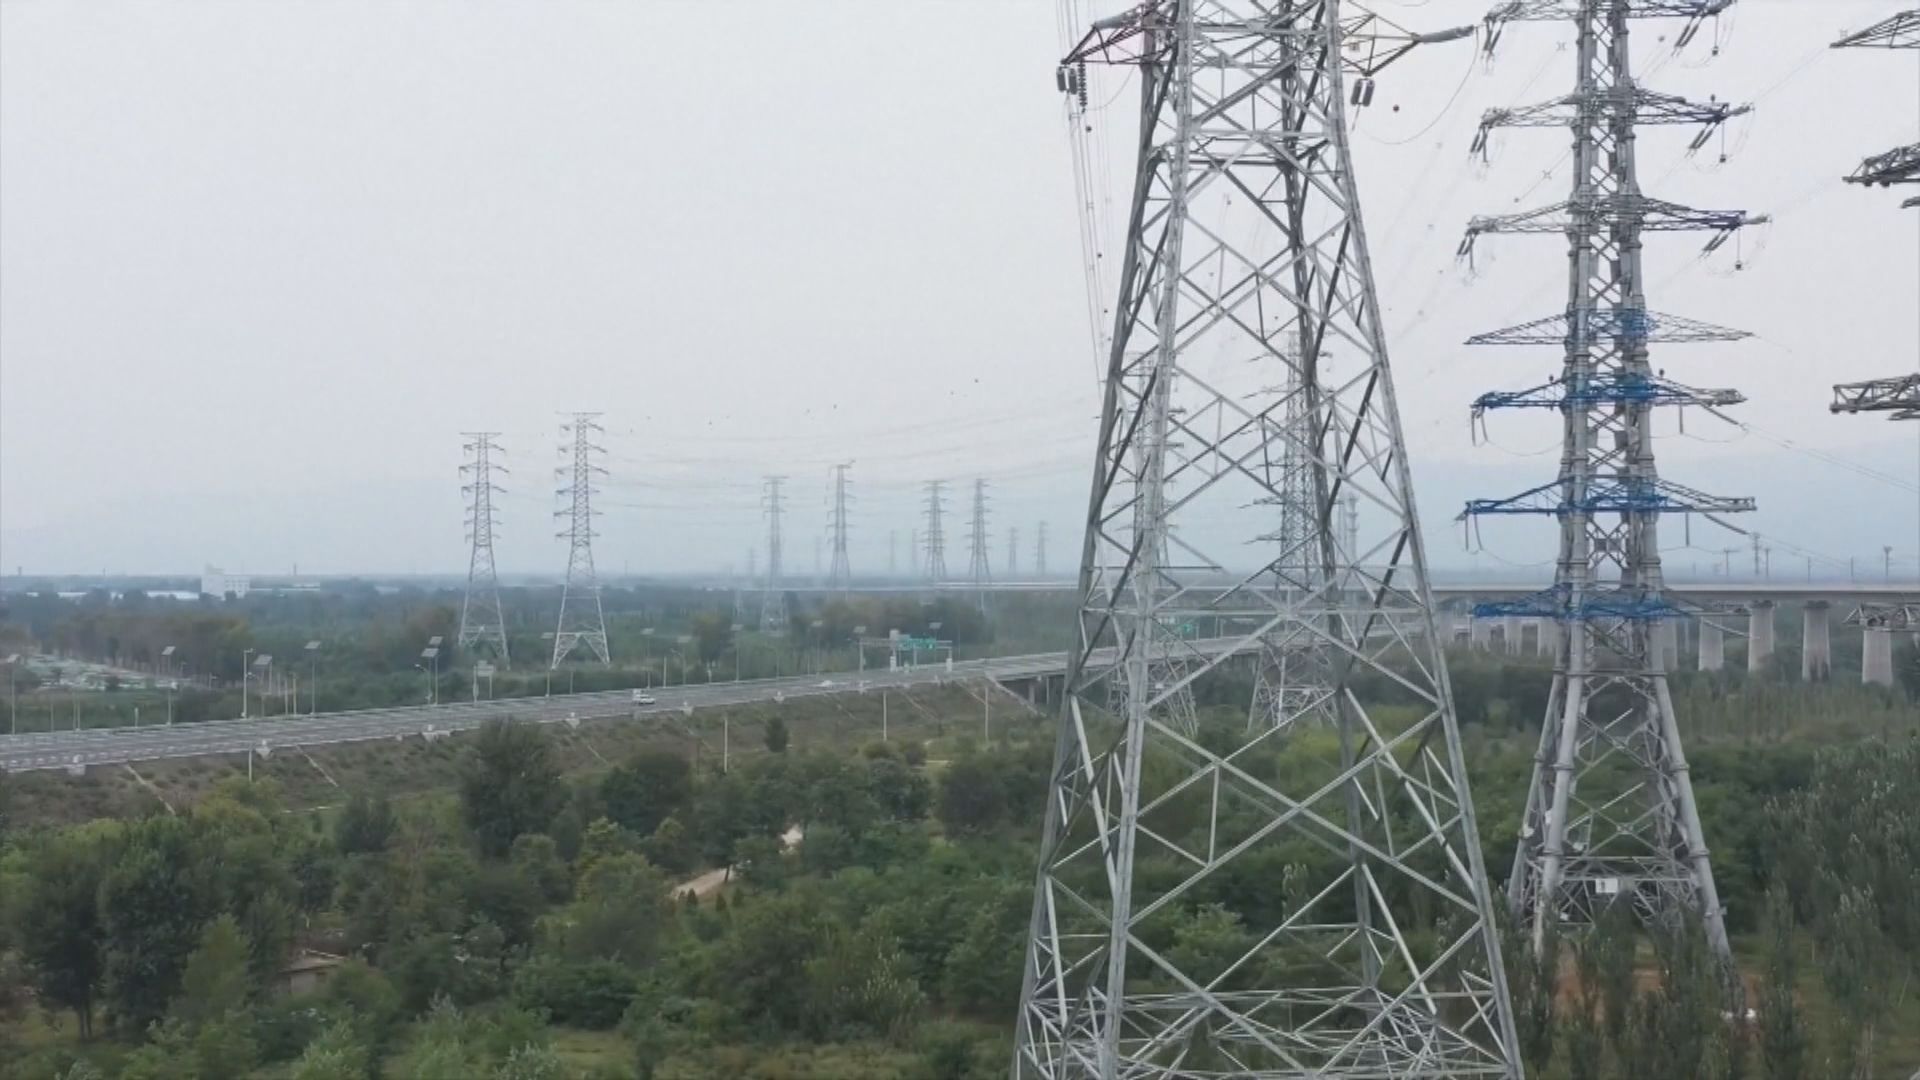 丁薛祥要求在夏季用電高峰期 堅決杜絕拉閘限電